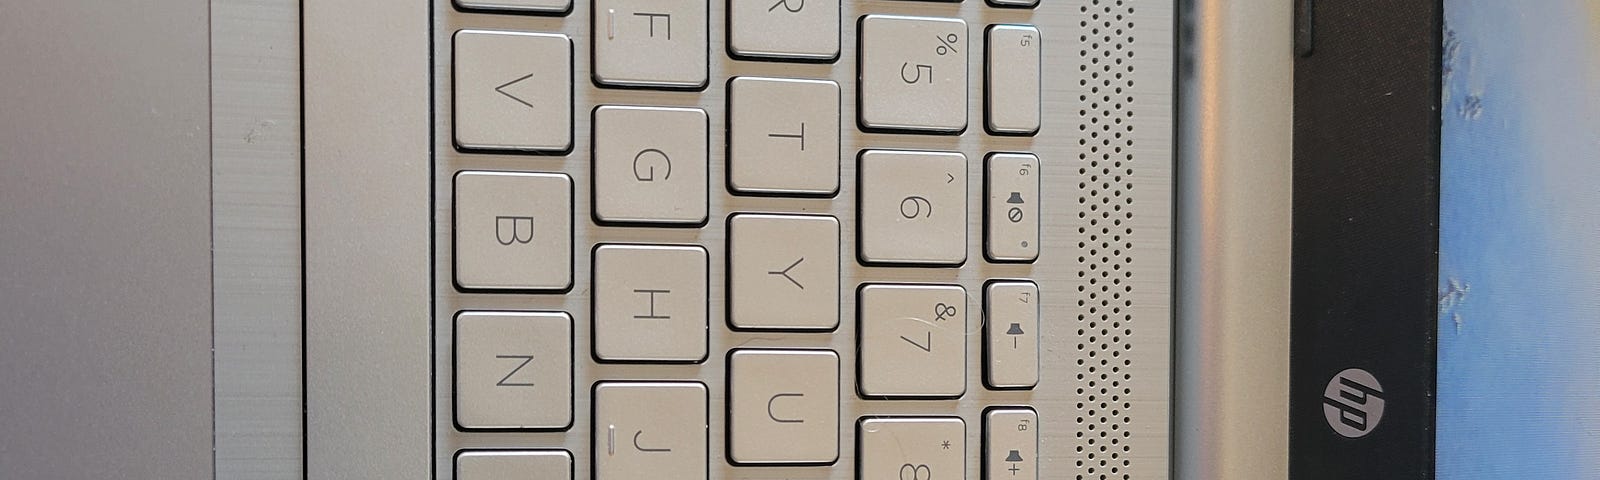 Grey key board